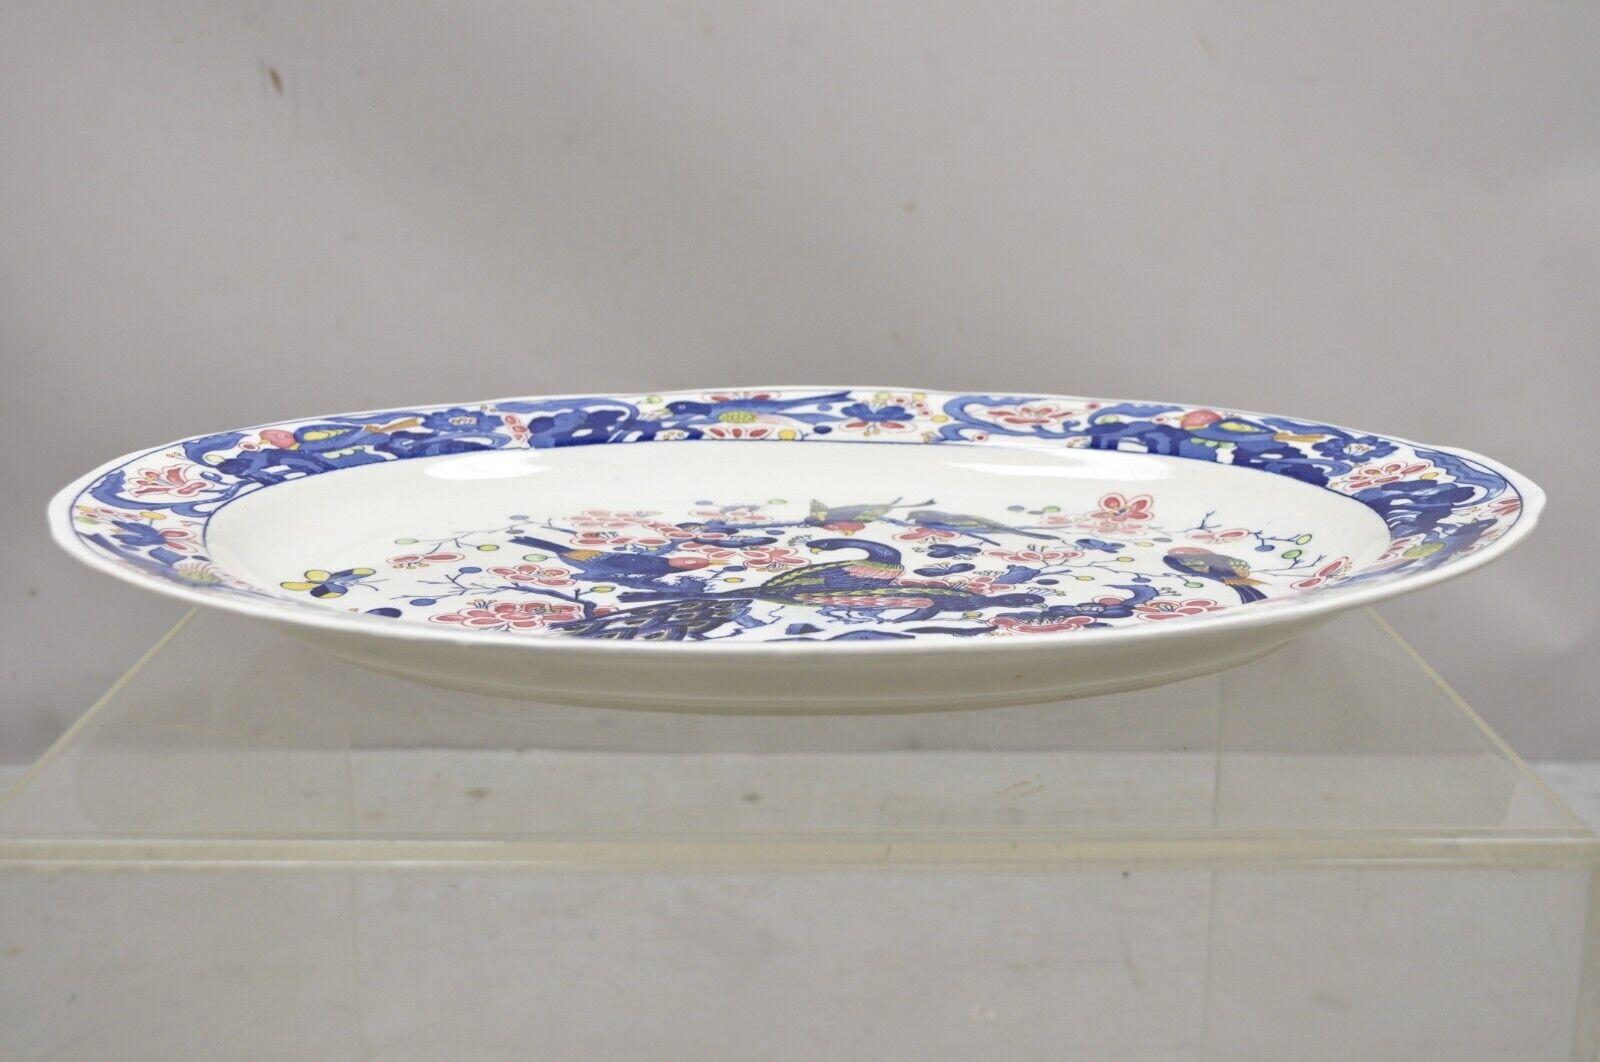 Japanese Blue and White ceramic Porcelain bird scene 18